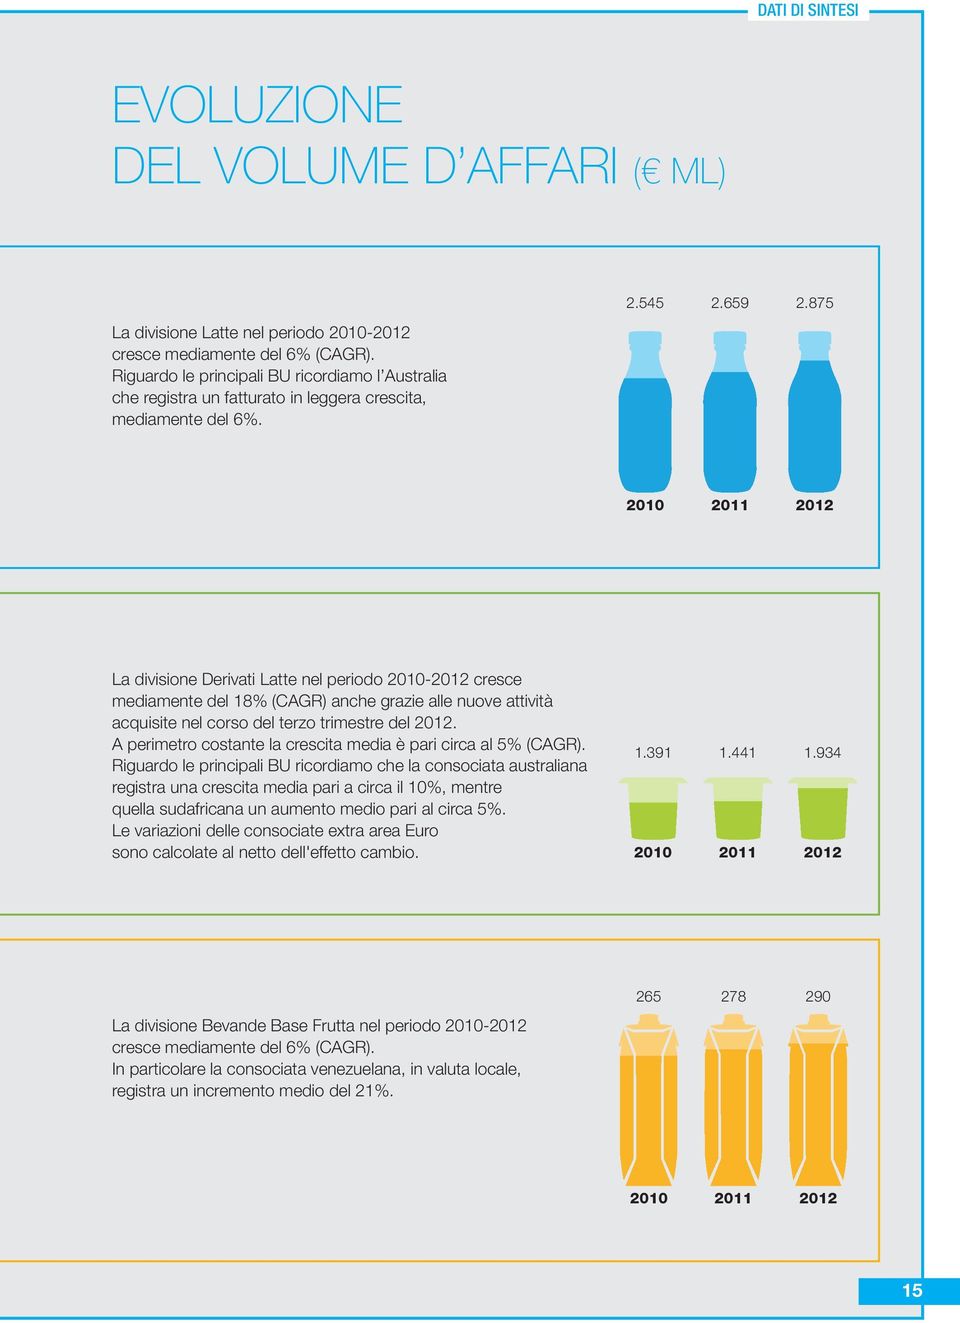 875 2010 2011 2012 La divisione Derivati Latte nel periodo 2010-2012 cresce mediamente del 18% (CAGR) anche grazie alle nuove attività acquisite nel corso del terzo trimestre del 2012.